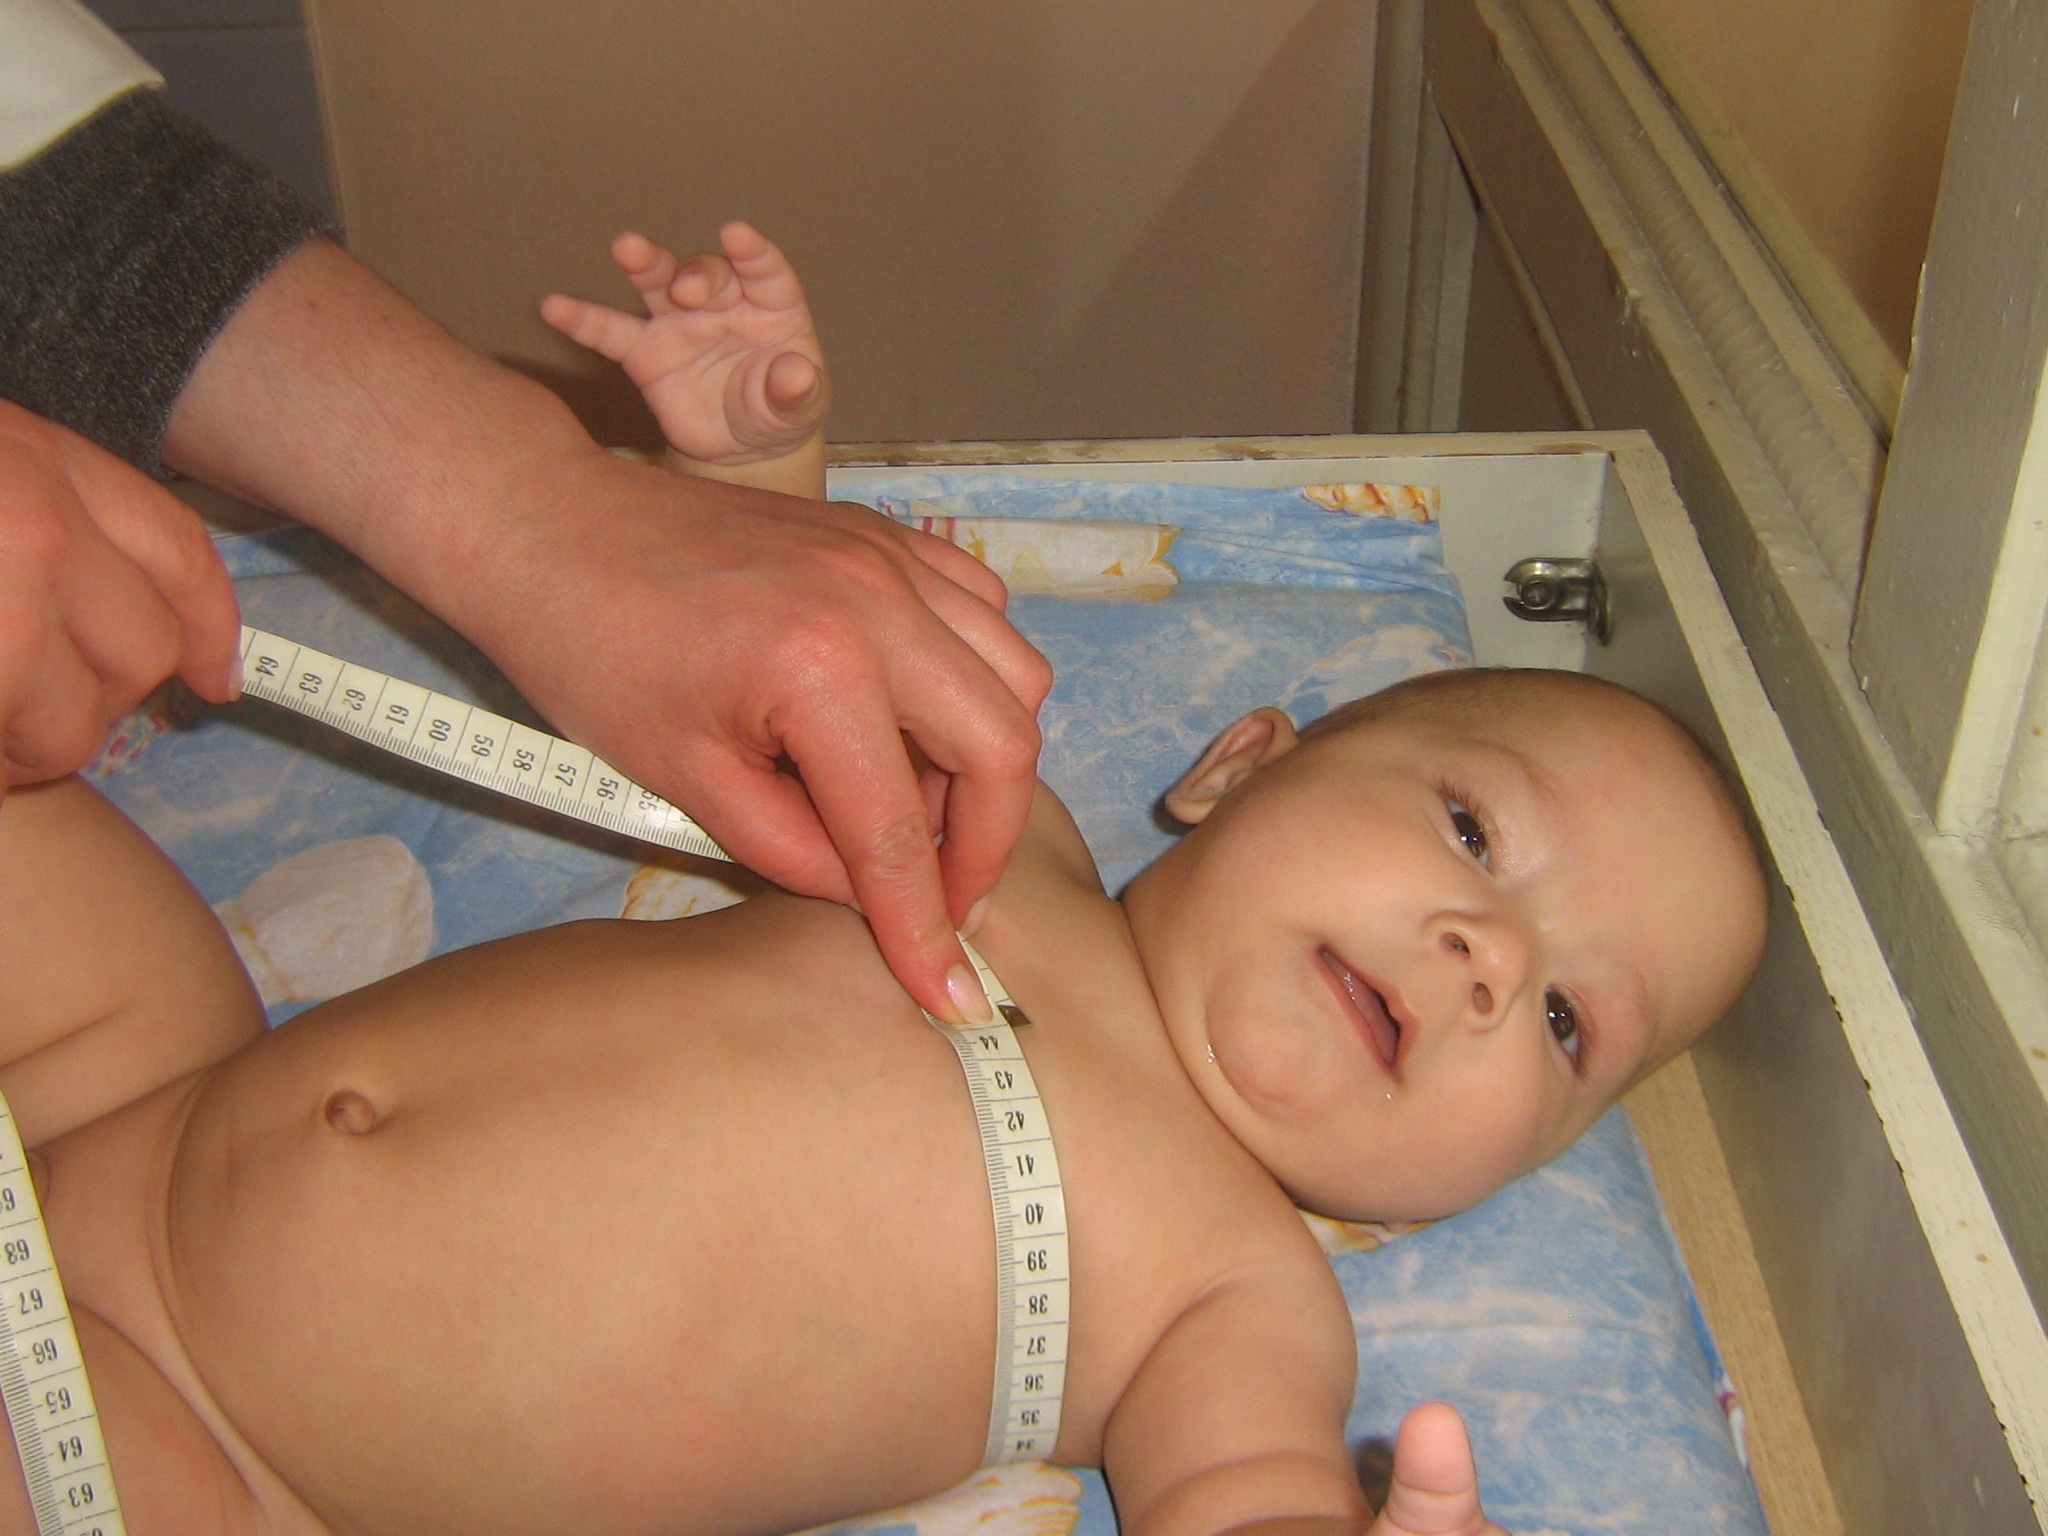 Антропометрия измерение окружности грудной клетки. Измерение окружности грудной клетки грудного ребенка. Измерение окружности груди у детей. Измерение окружности груди грудного ребенка.